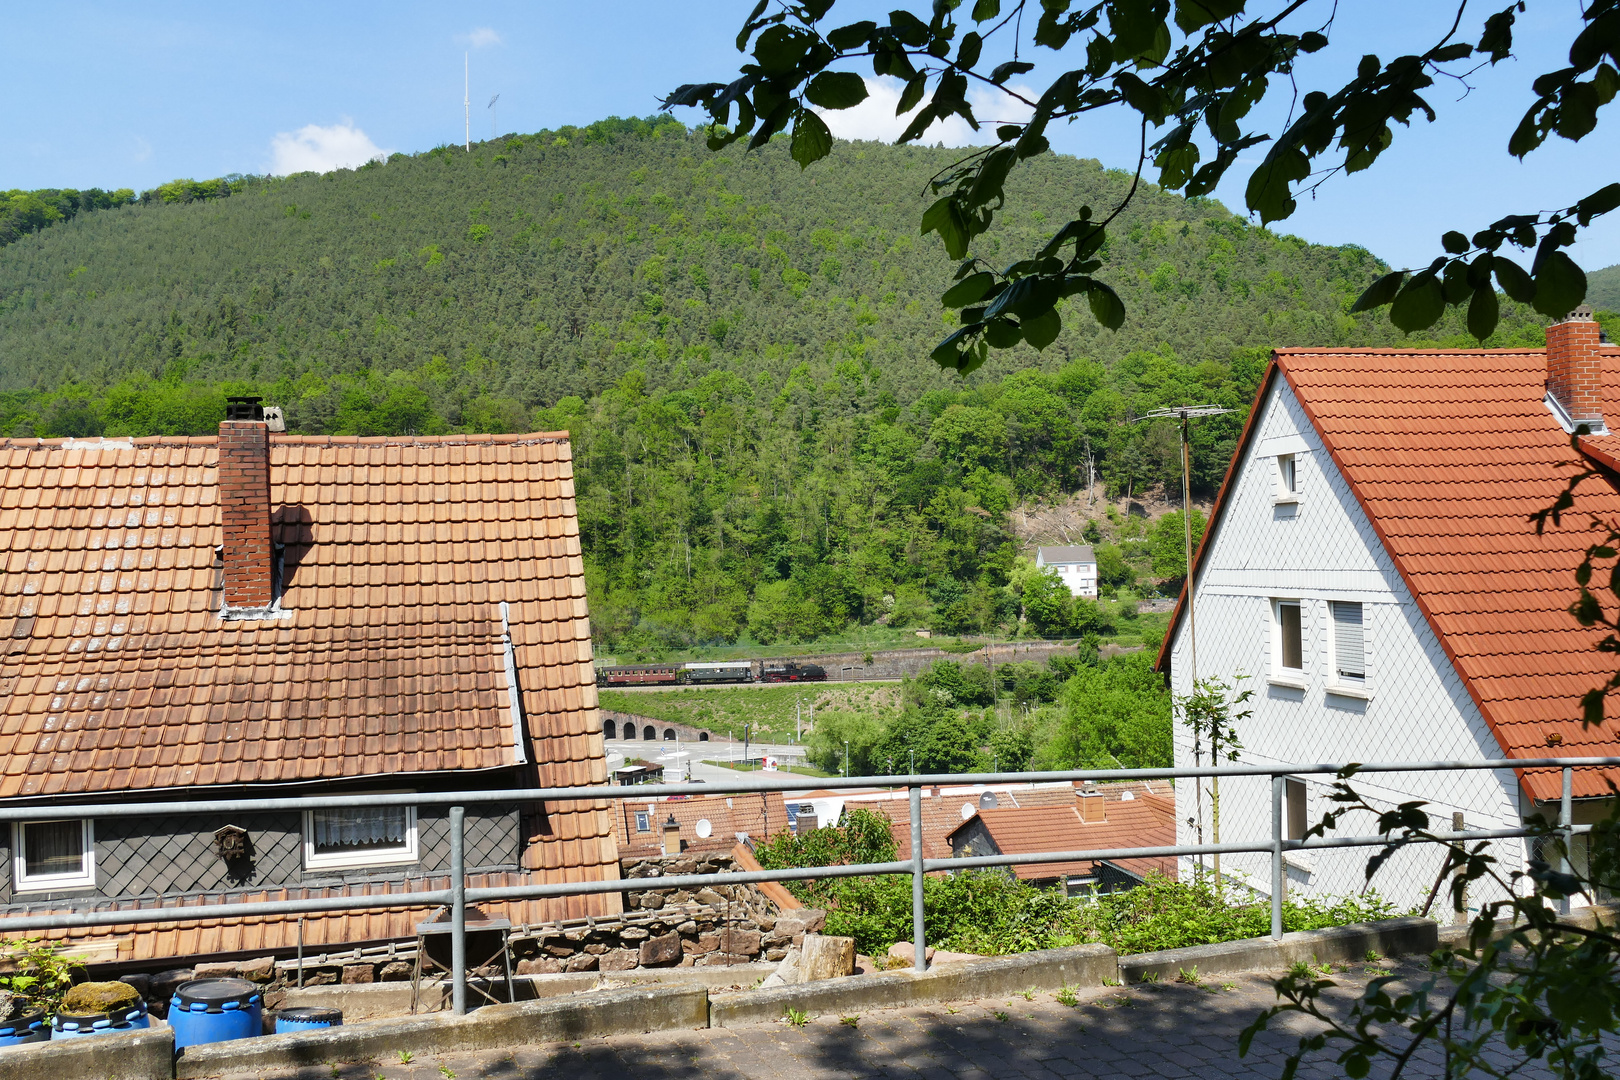 Kuckucksbähnel in Lambrecht/Pfalz